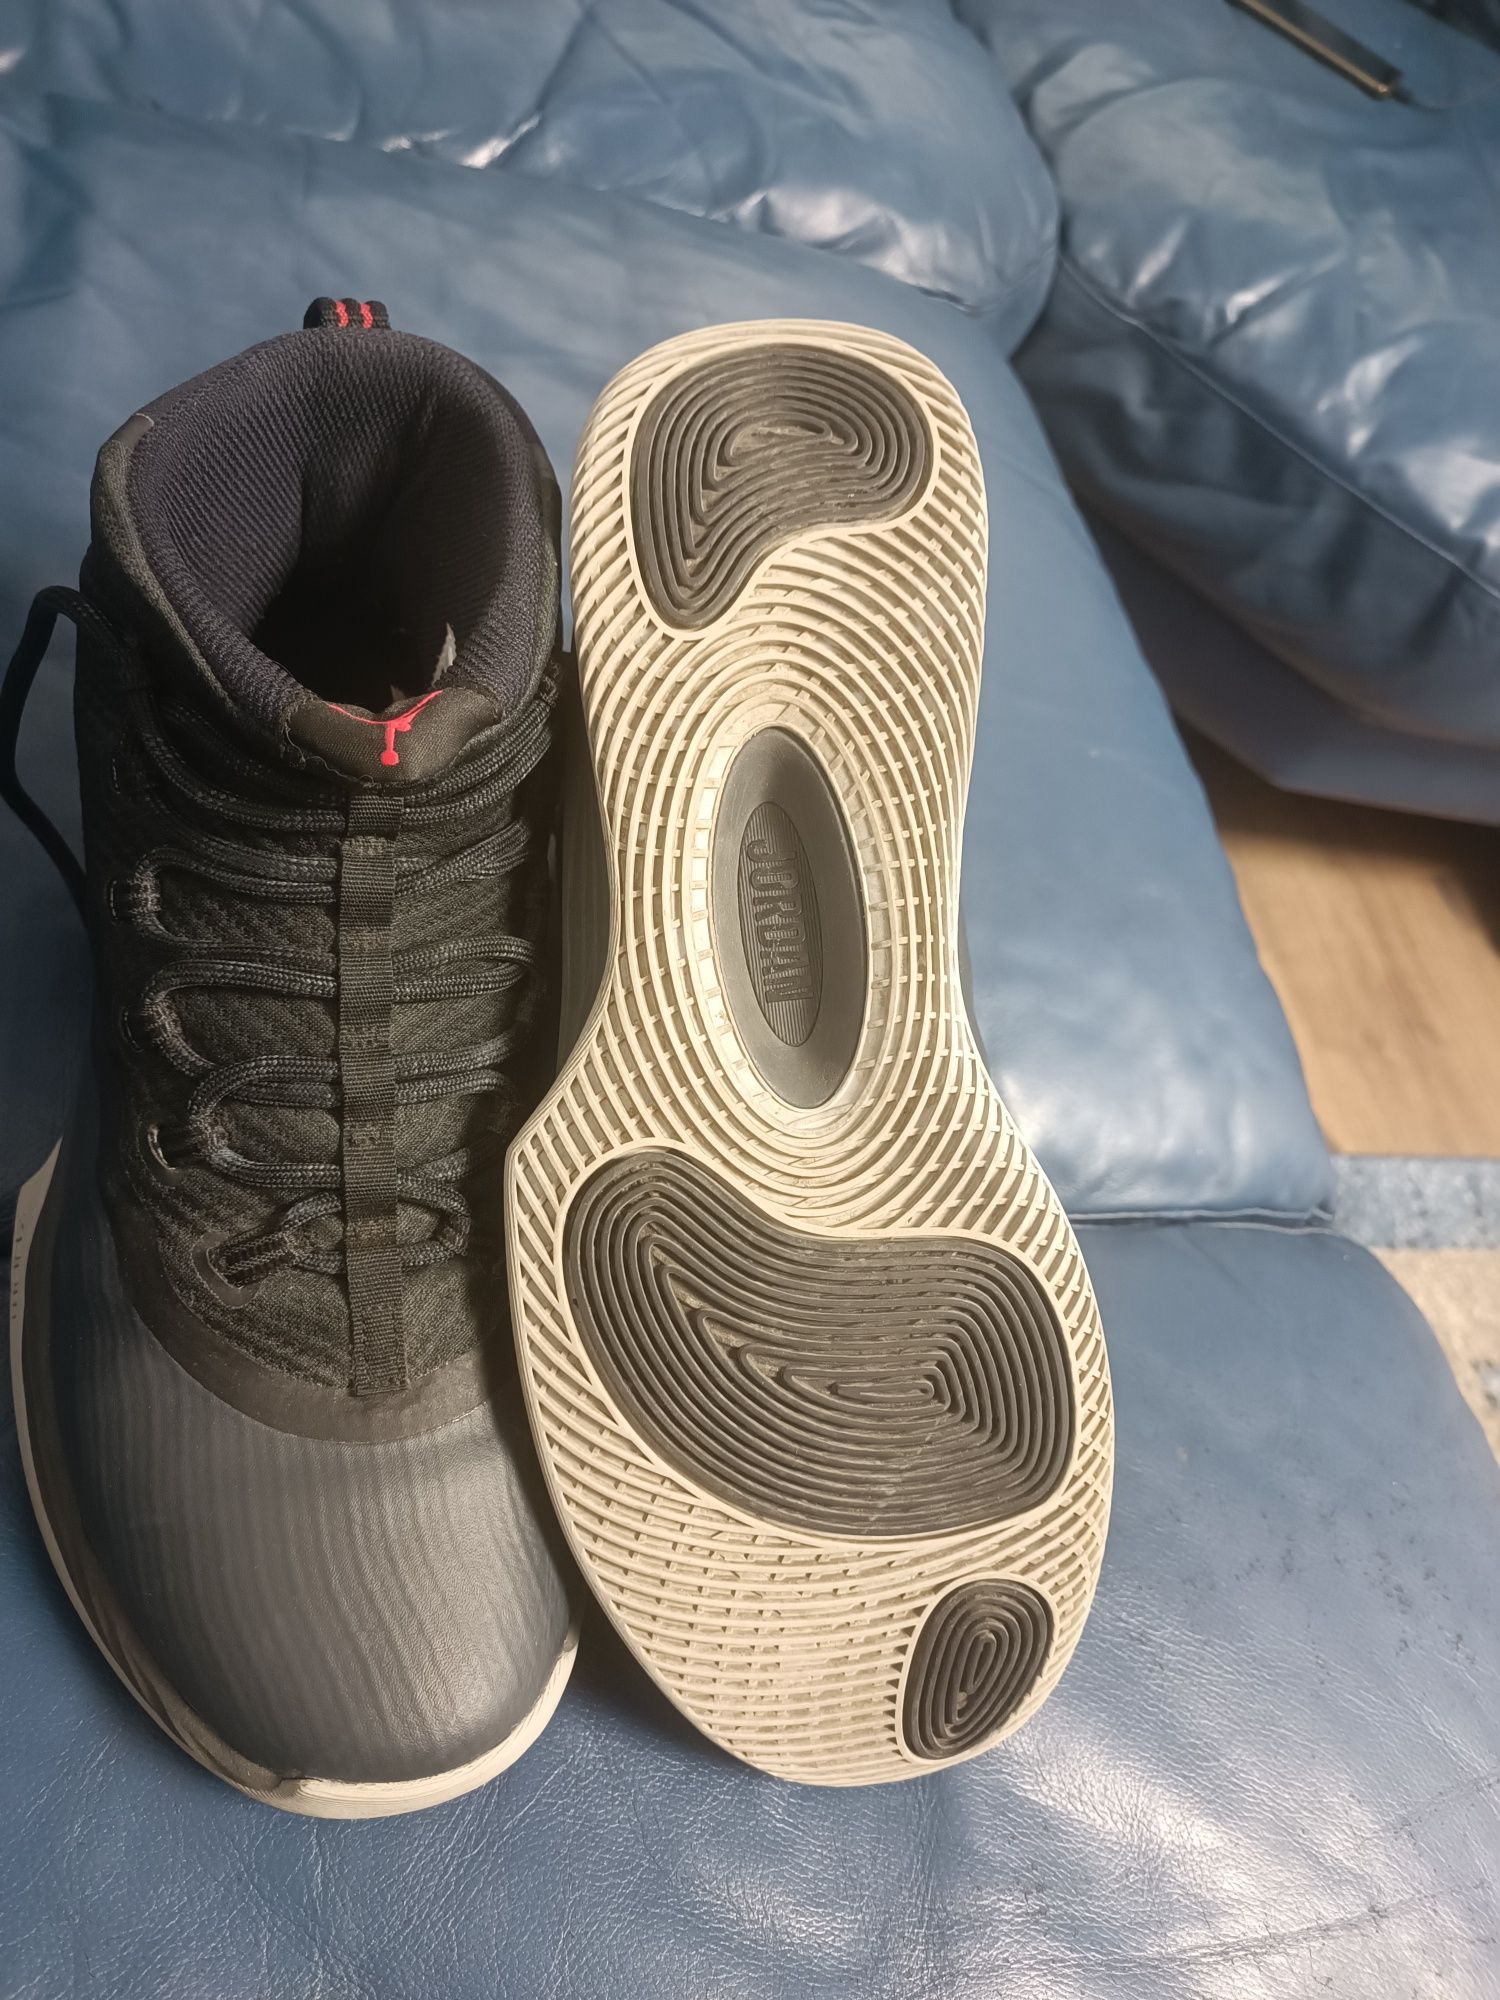 Nike Jordan air max